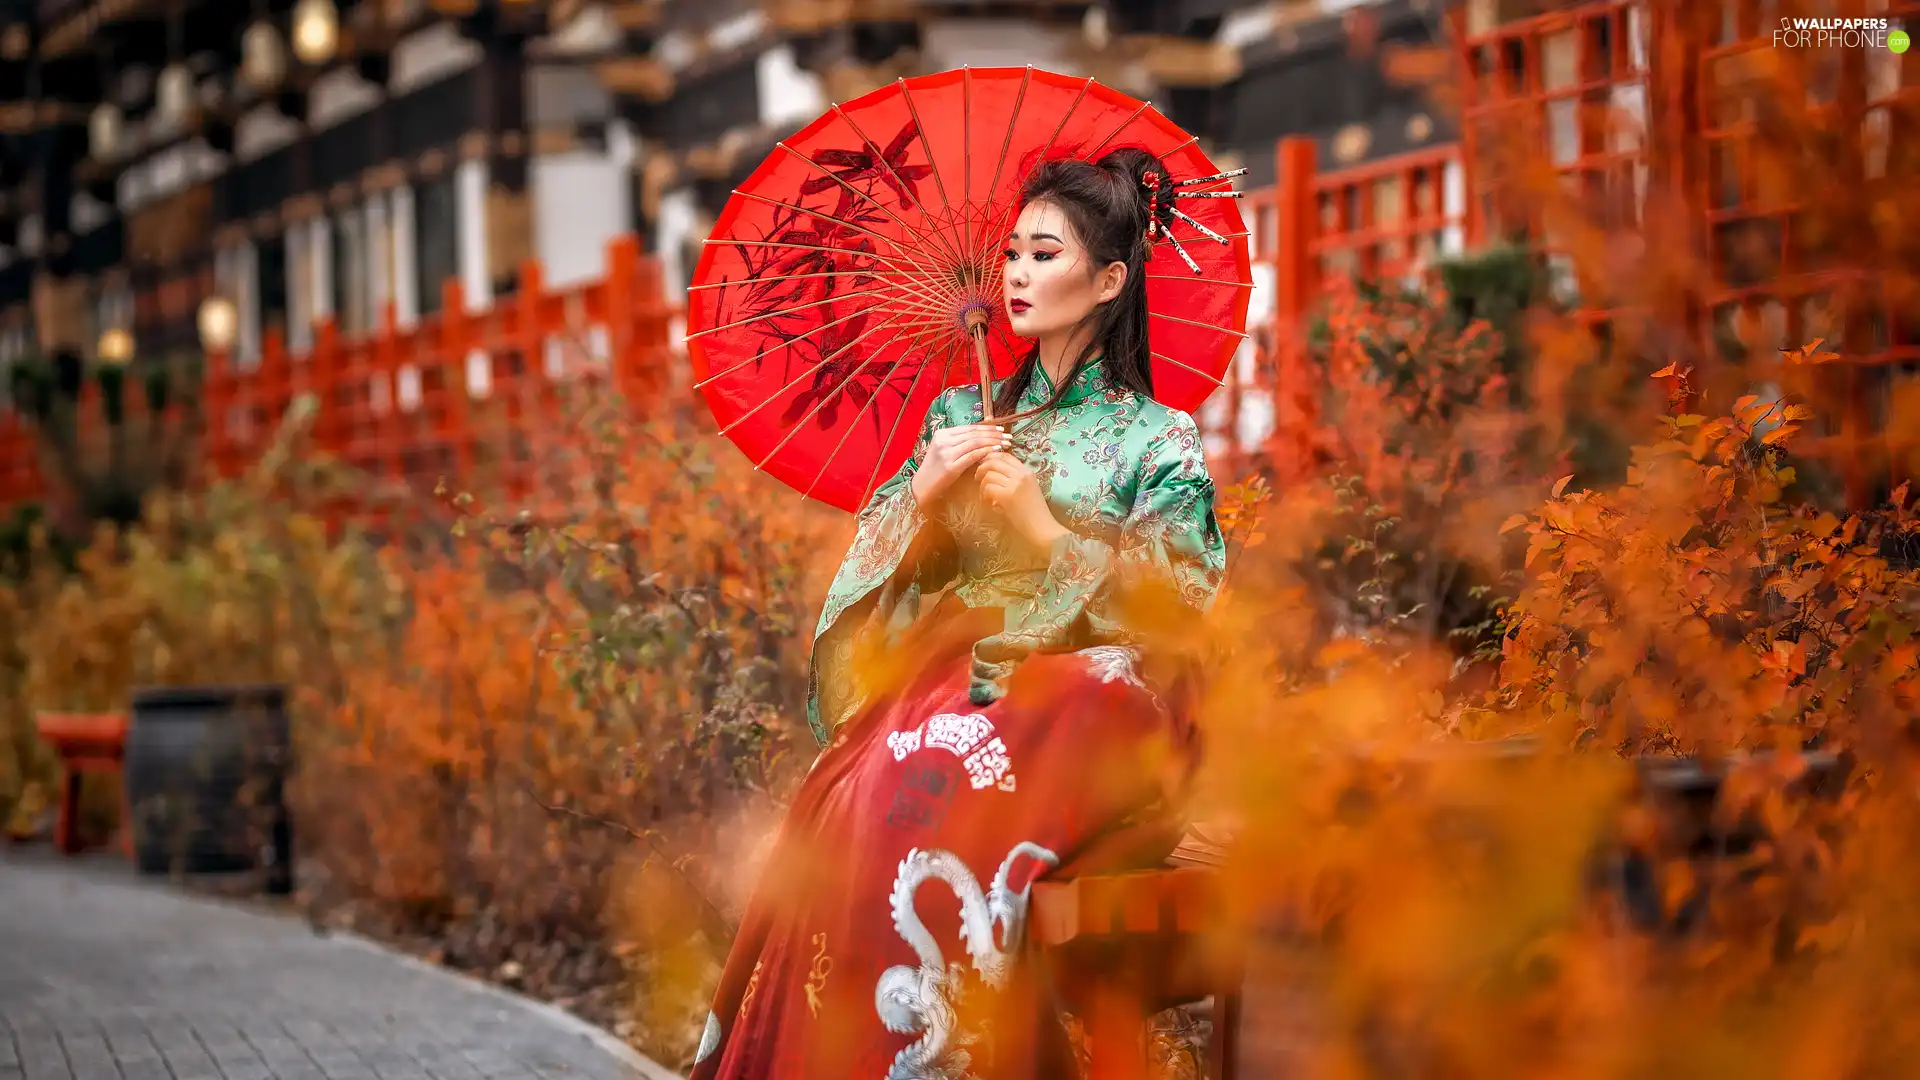 Women, red hot, umbrella, Asian